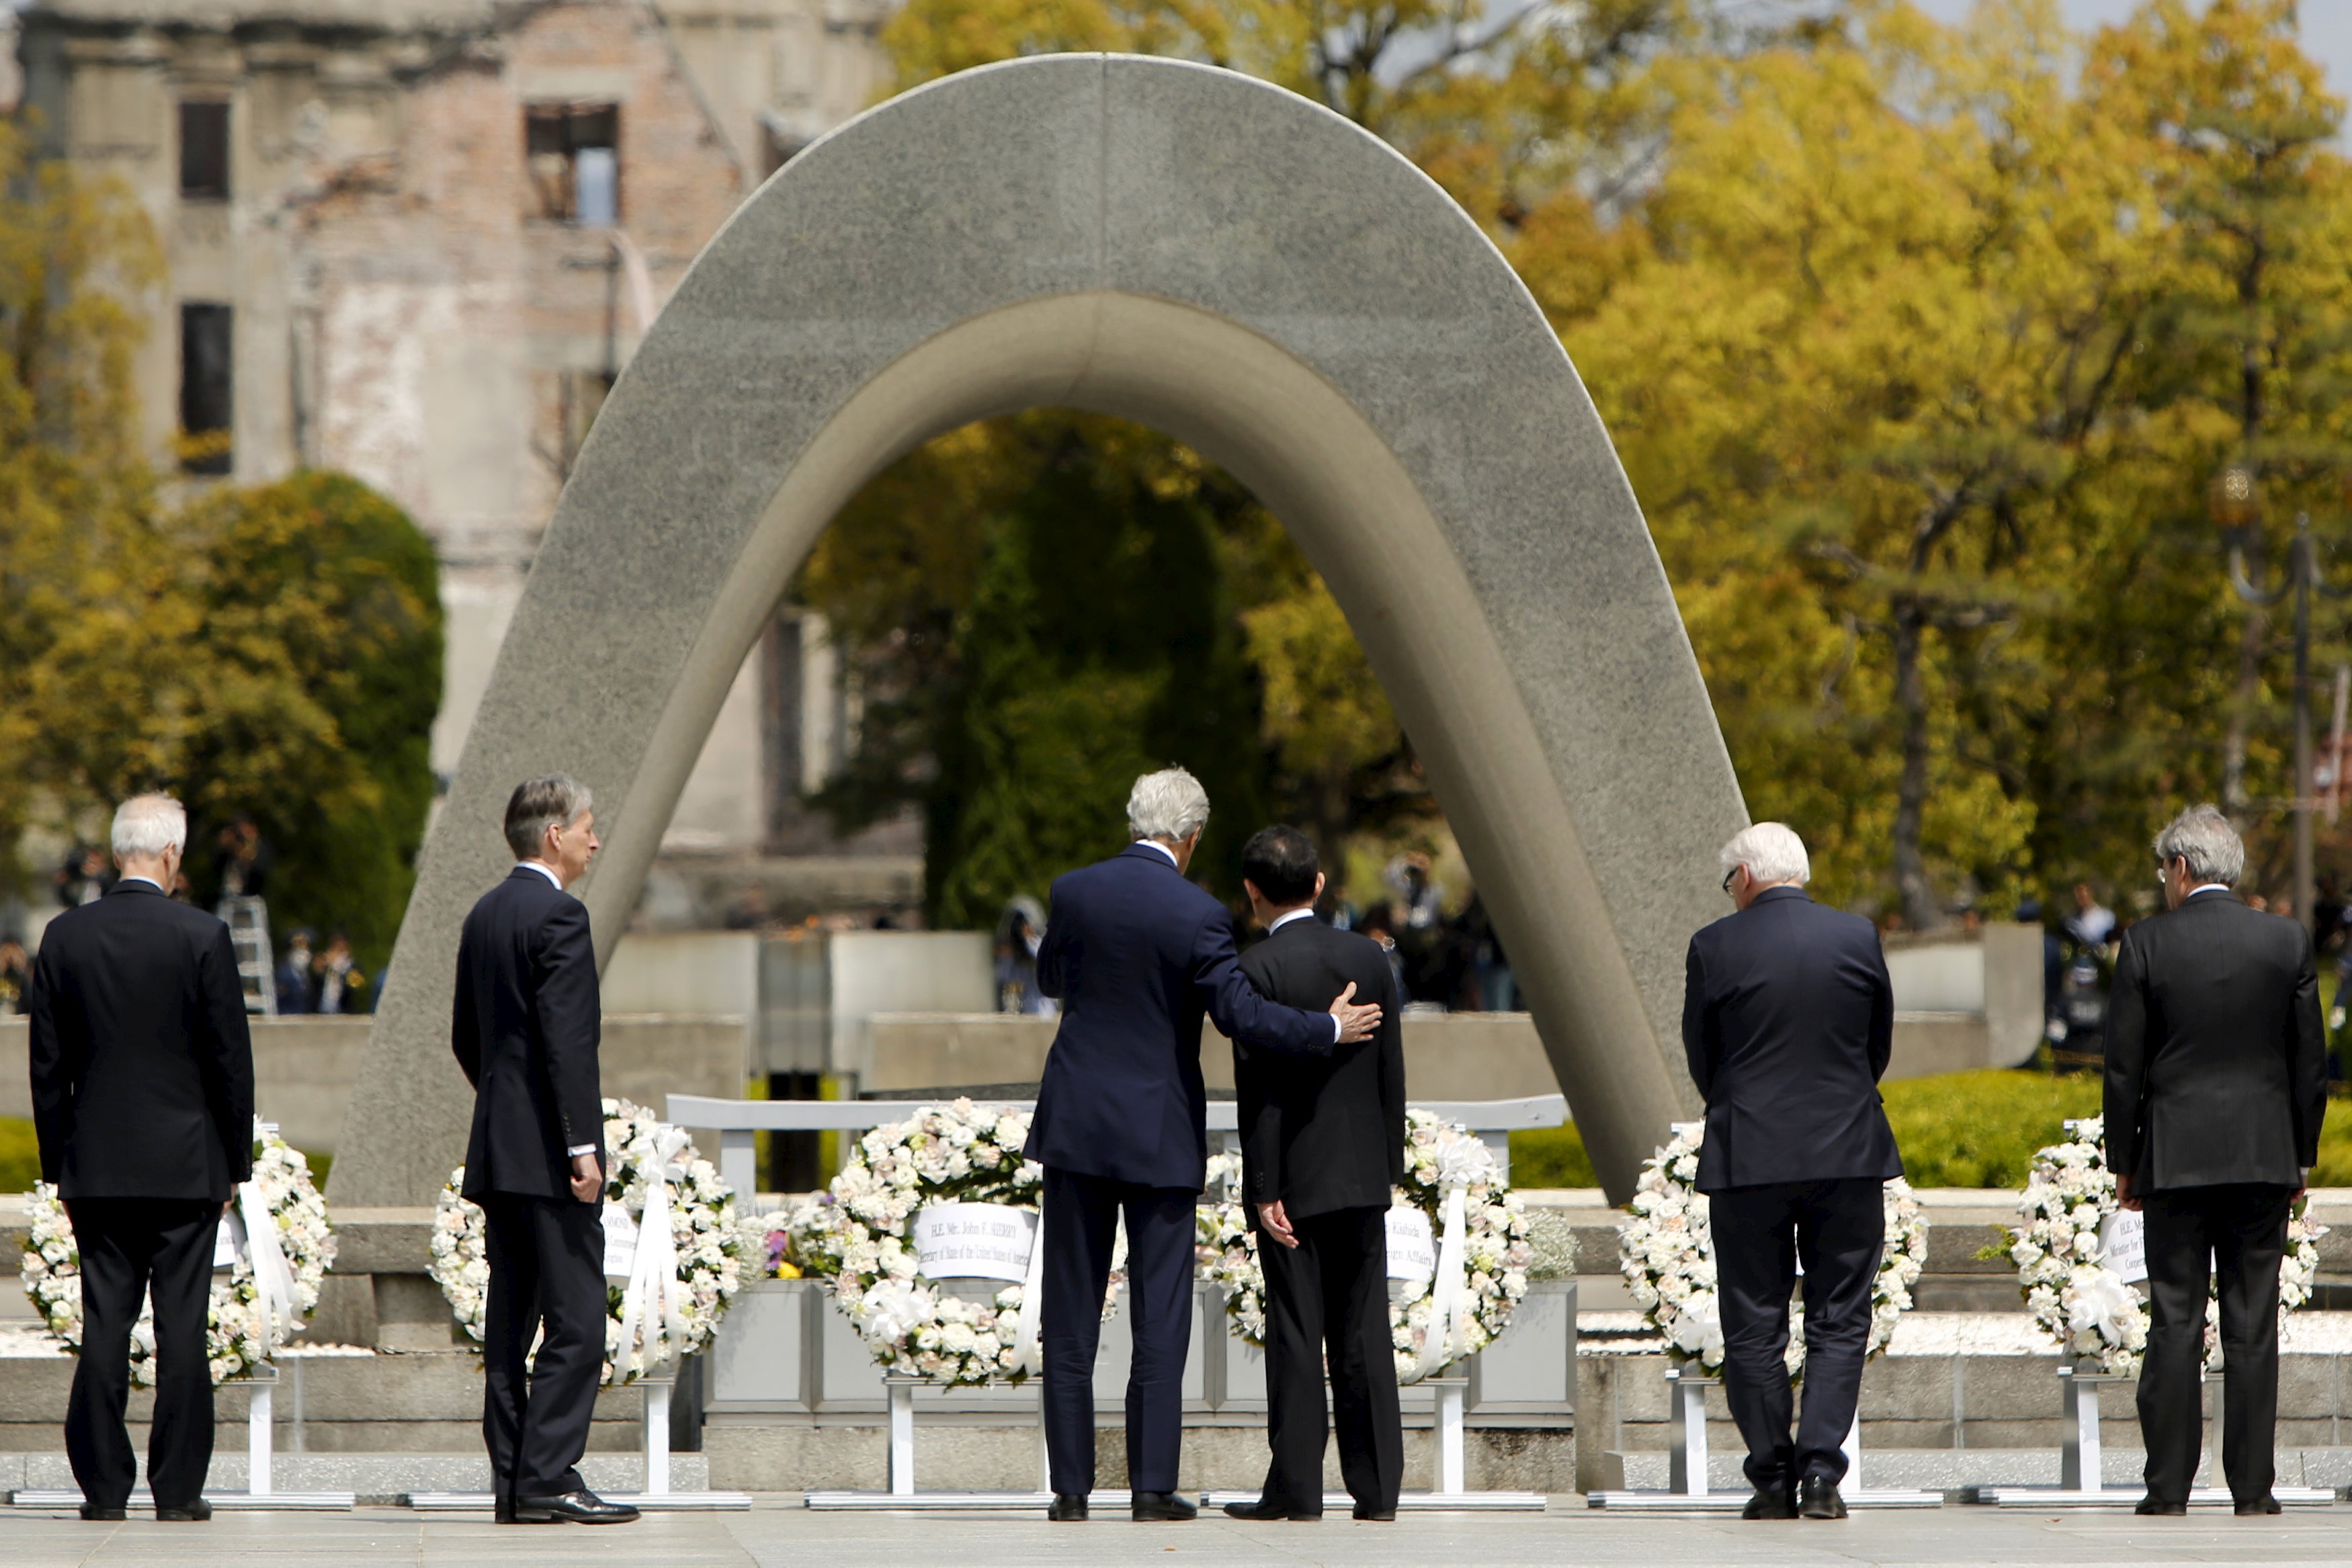 John Kerry visits Hiroshima memorial 7 decades after atomic bomb - CBS News3500 x 2334